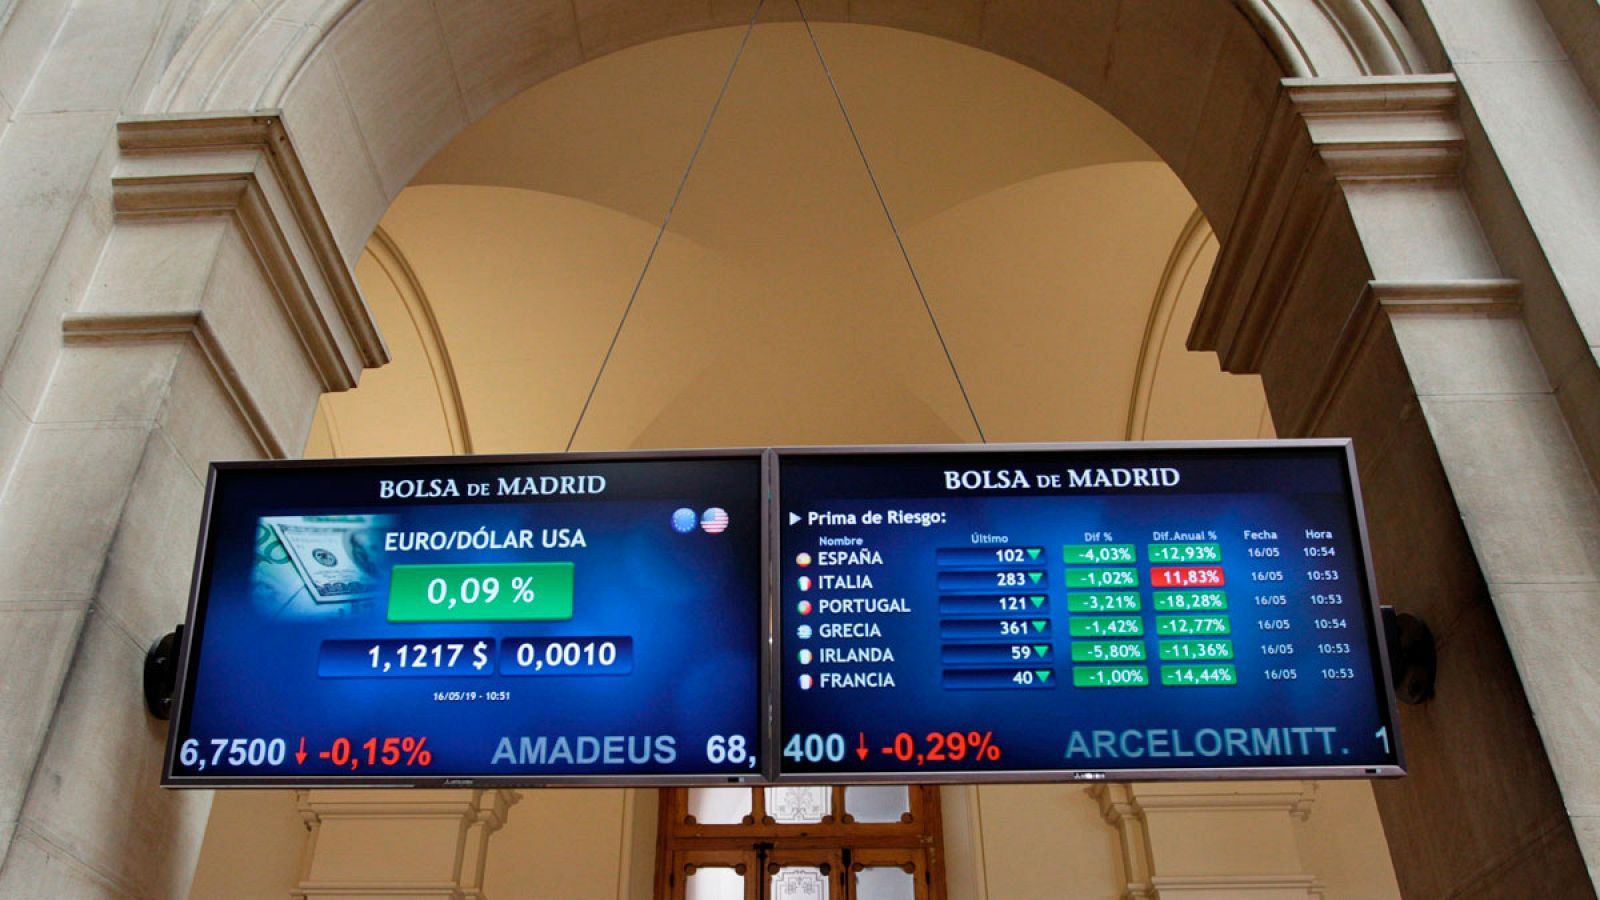 Pantallas en la Bolsa de Madrid que muestran la cotización del euro respecto al dólar y la prima de riesgo de varios países de la zona euro